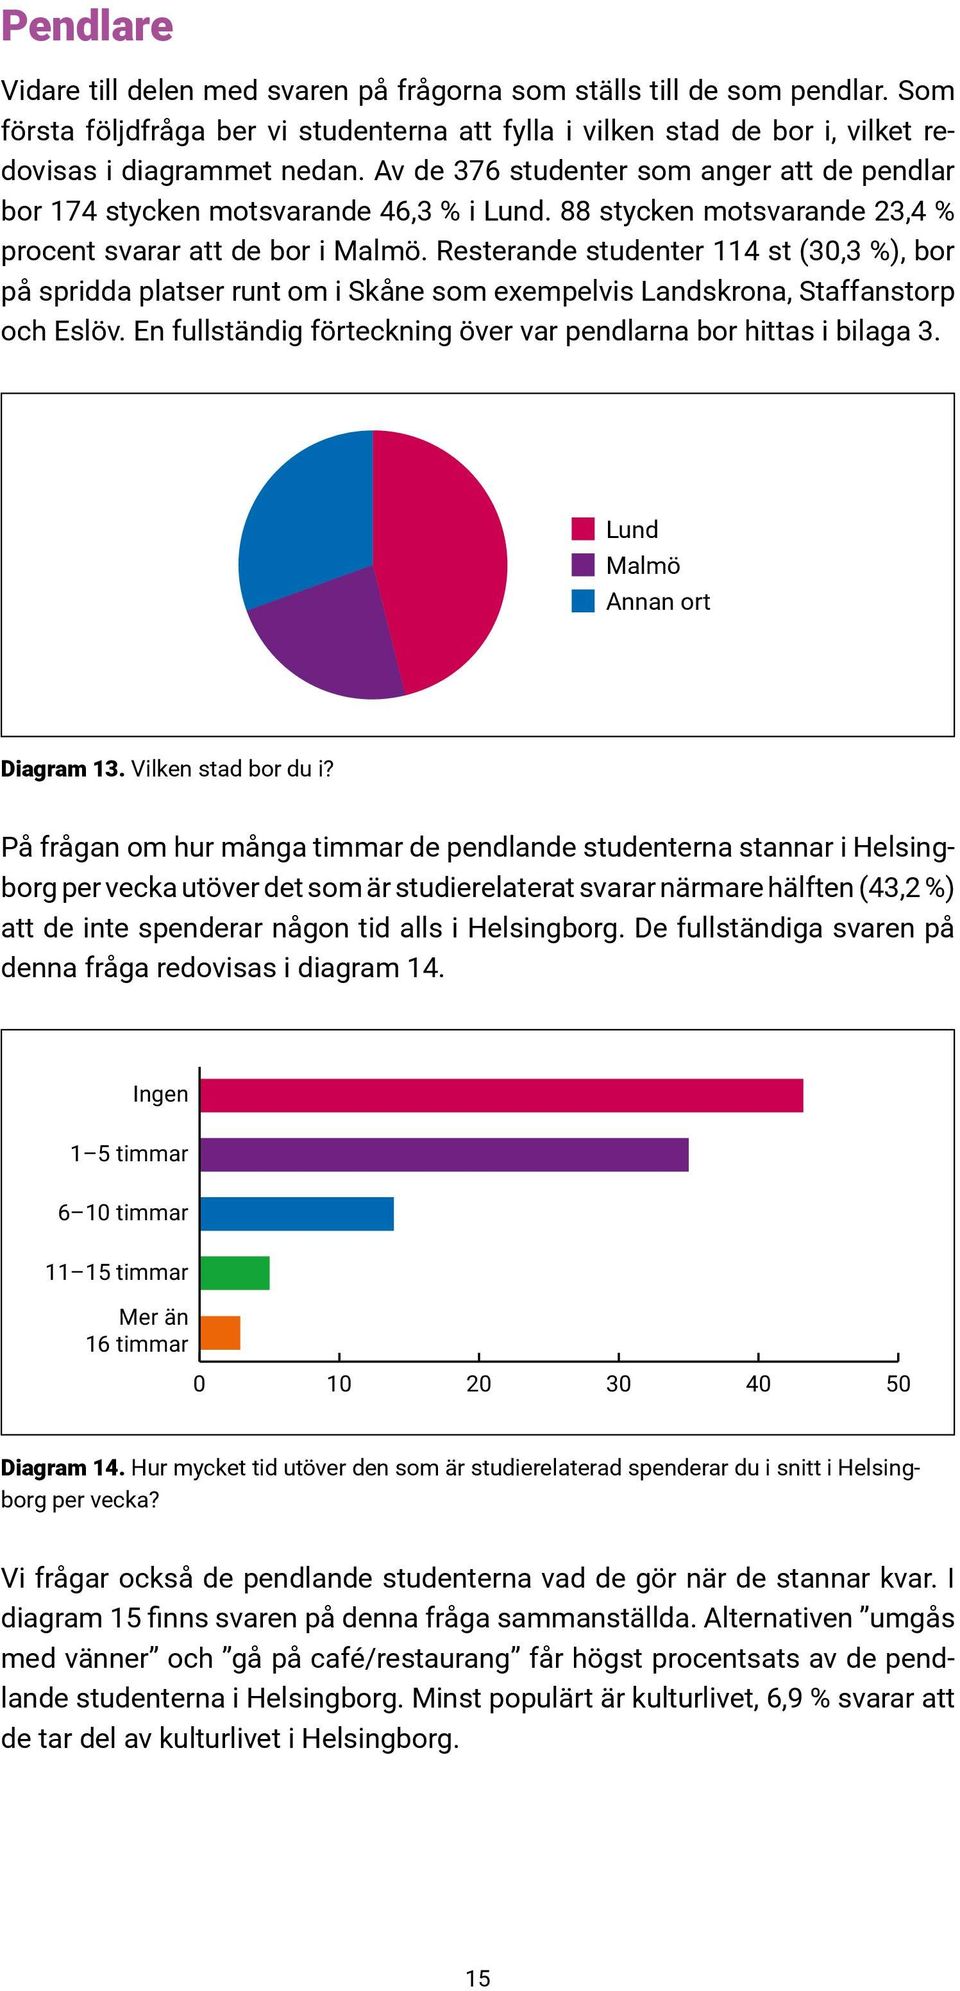 Resterande studenter 114 st (30,3 %), bor på spridda platser runt om i Skåne som exempelvis Landskrona, Staffanstorp och Eslöv. En fullständig förteckning över var pendlarna bor hittas i bilaga 3.